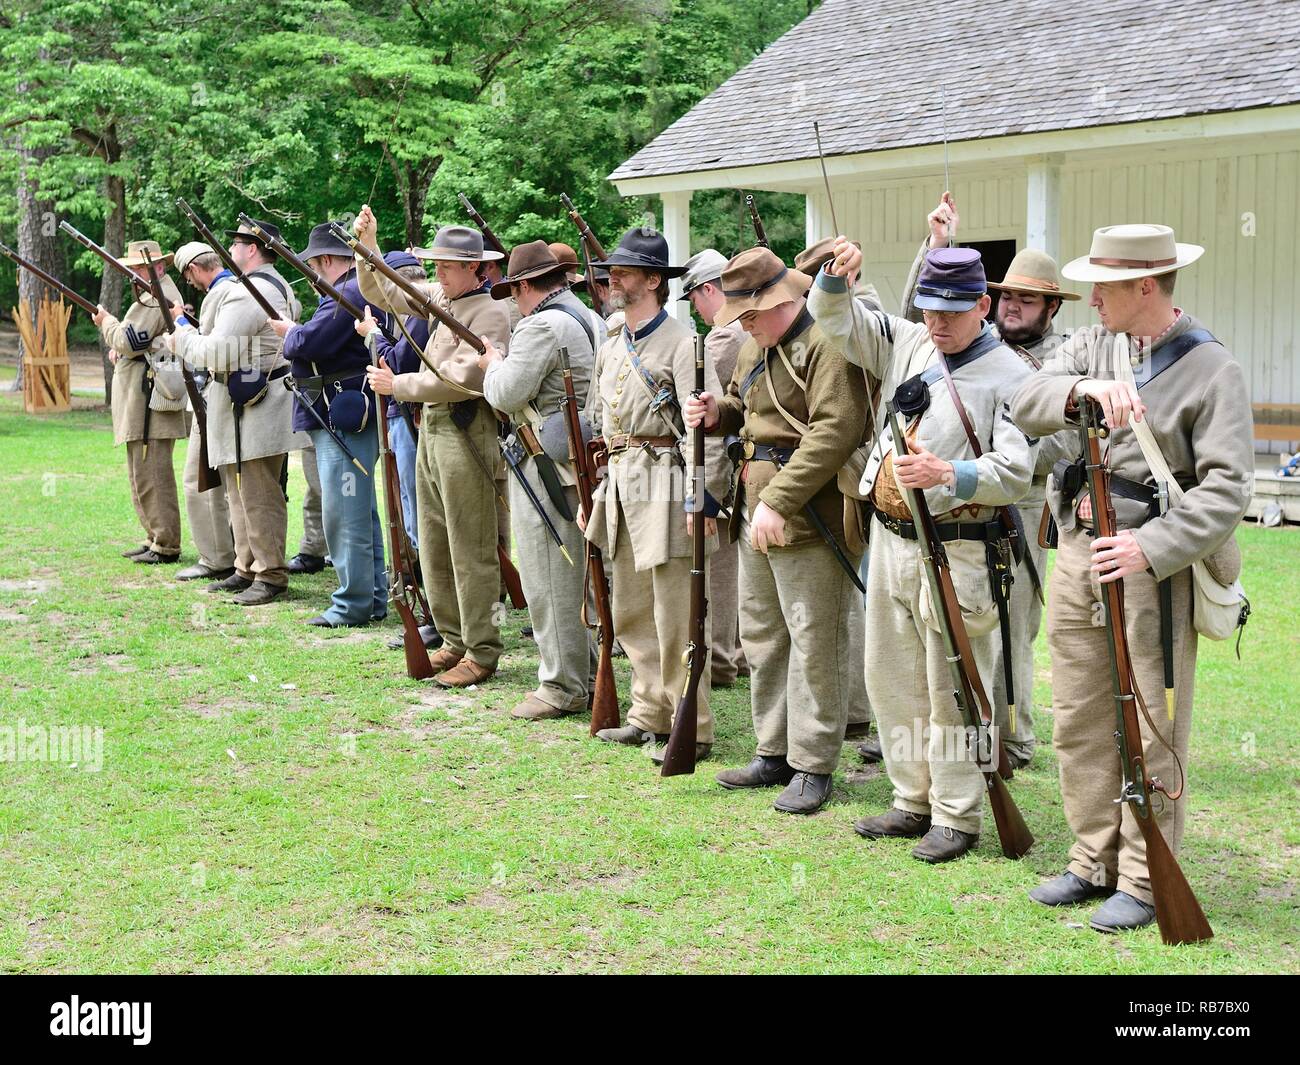 La guerra civile americana la rievocazione di soldati confederati e Unione uniformi stand in formazione a battaglia ricreazione in Marbury Alabama USA. Foto Stock